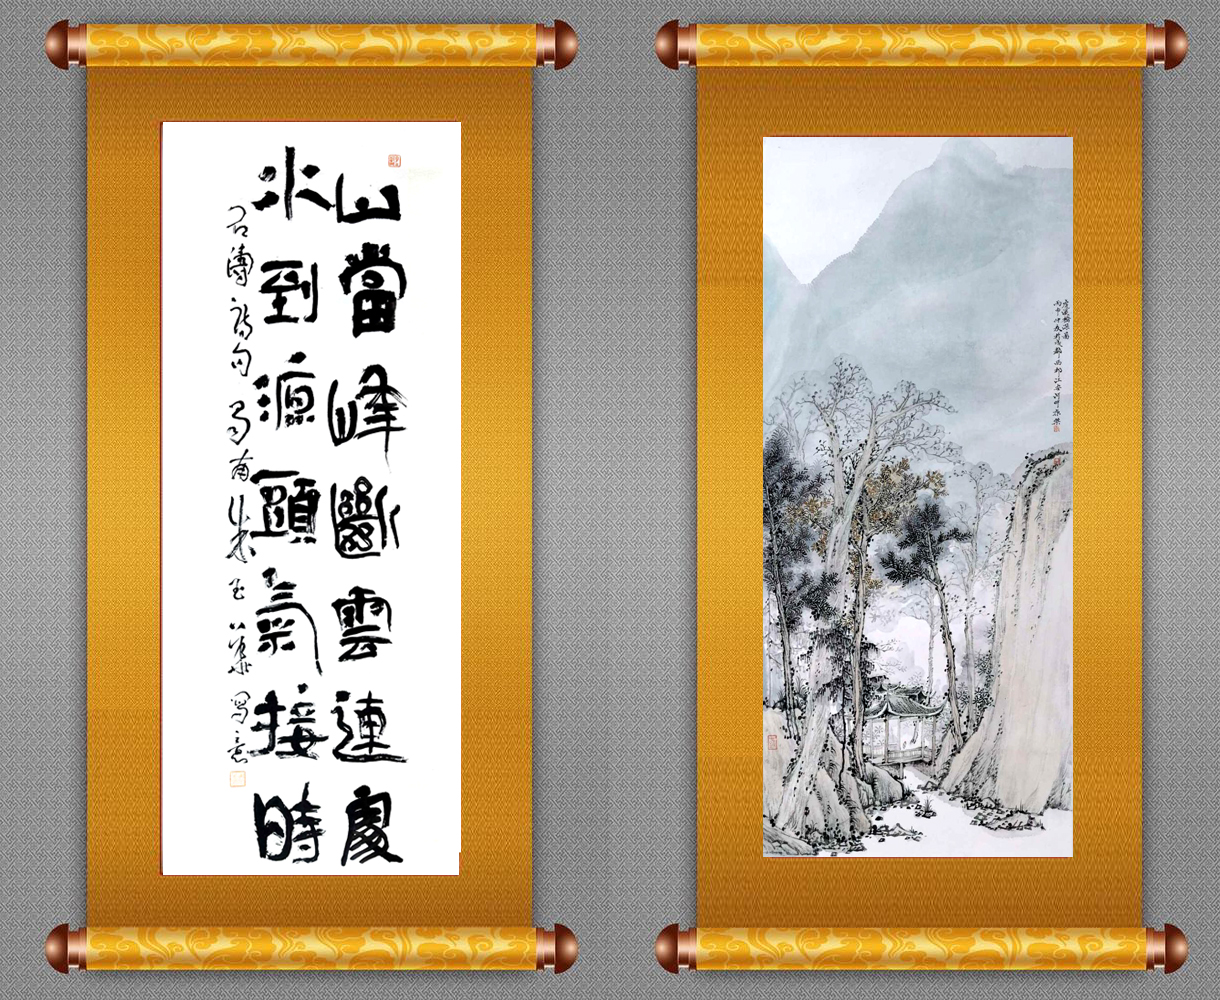 高娓娓：美中文化周将在纽约举办，邀您共赏中华艺术